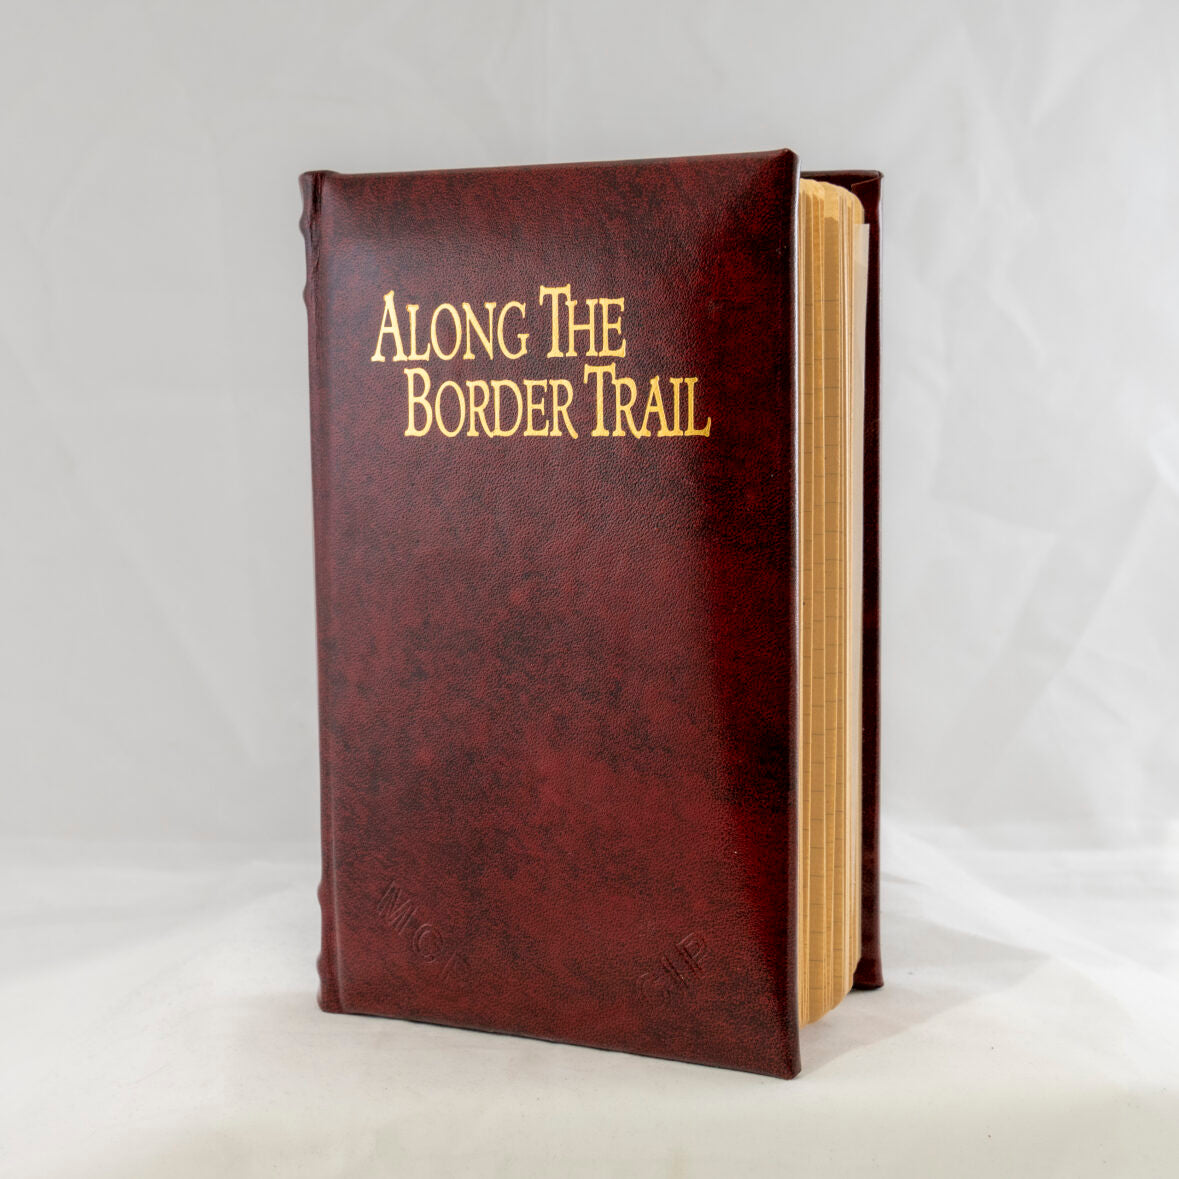 Along the Border Trail by M.C. Poulsen